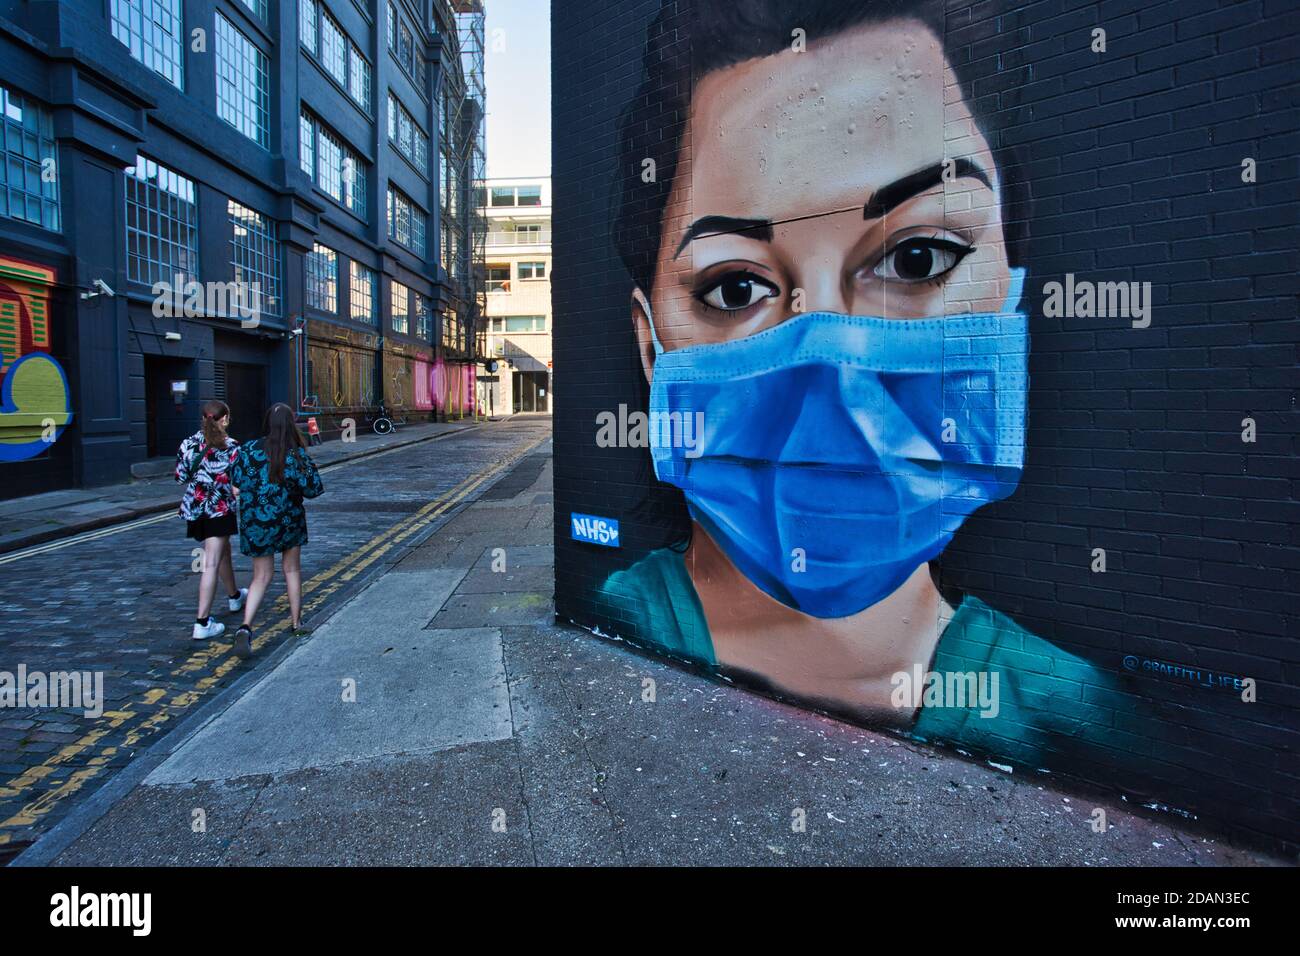 GROSSBRITANNIEN / England / London /zwei Frauen, die in London an einem Stück Straßenkunst vorbeigehen, in dem eine Krankenschwester des NHS mit einer Gesichtsmaske dargestellt ist. Stockfoto